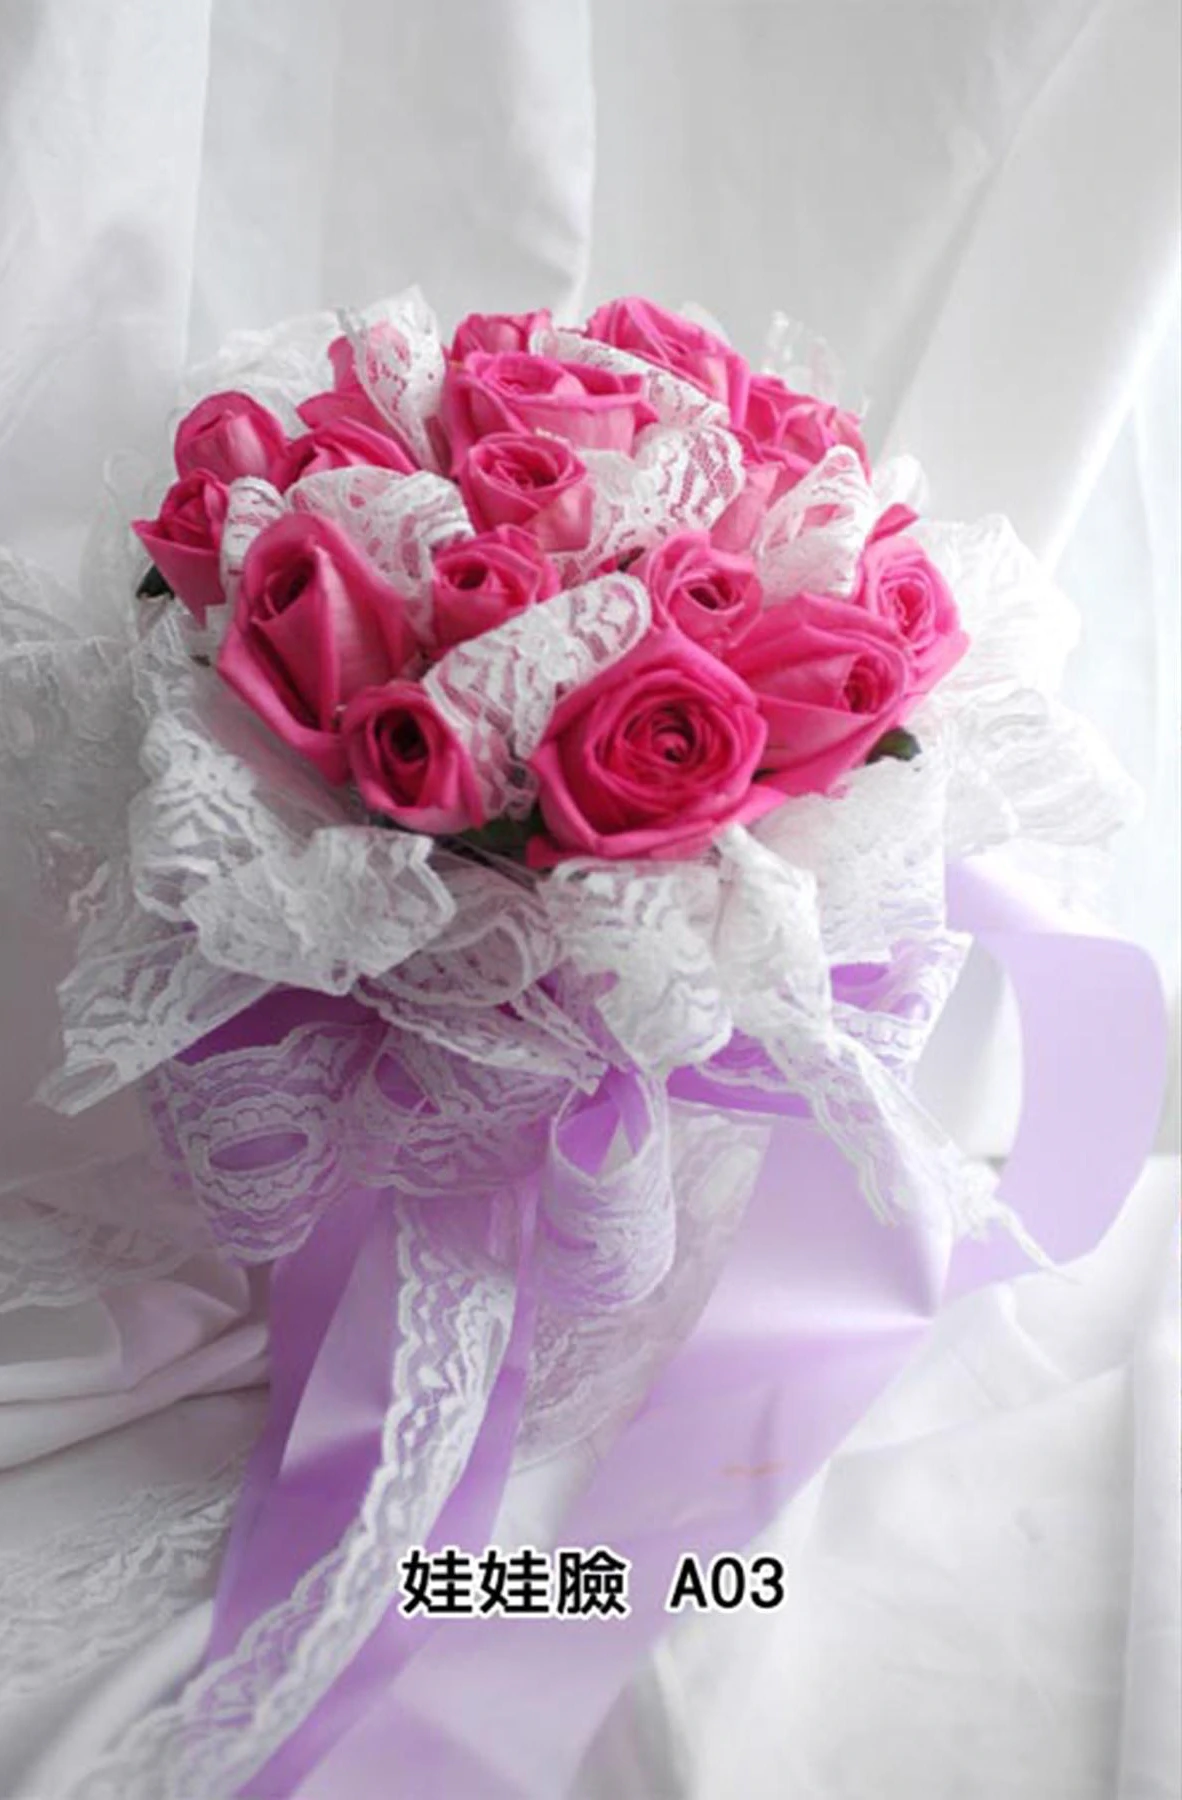 新娘捧花-花材有粉紅玫瑰花,白色蕾絲,花束型